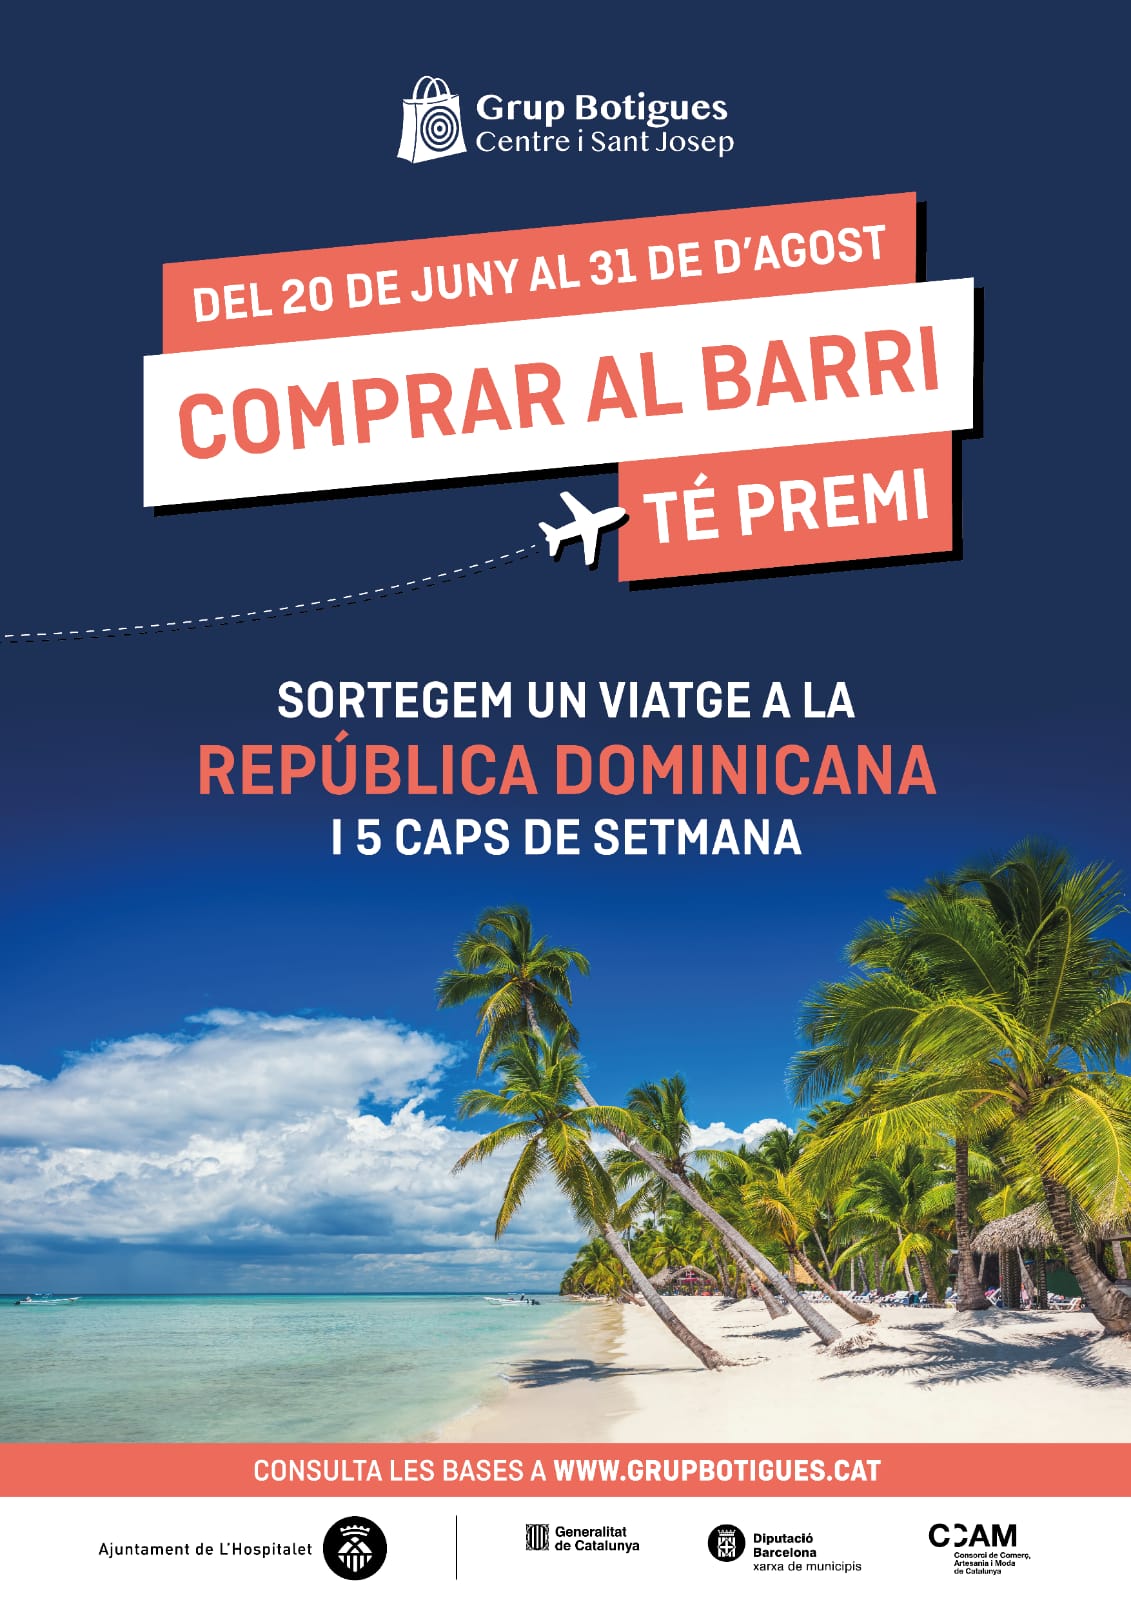 SUPER SORTEIG D'UN VIATGE A REPUBLICA DOMINICANA I 5 CAPS DE SETMANA